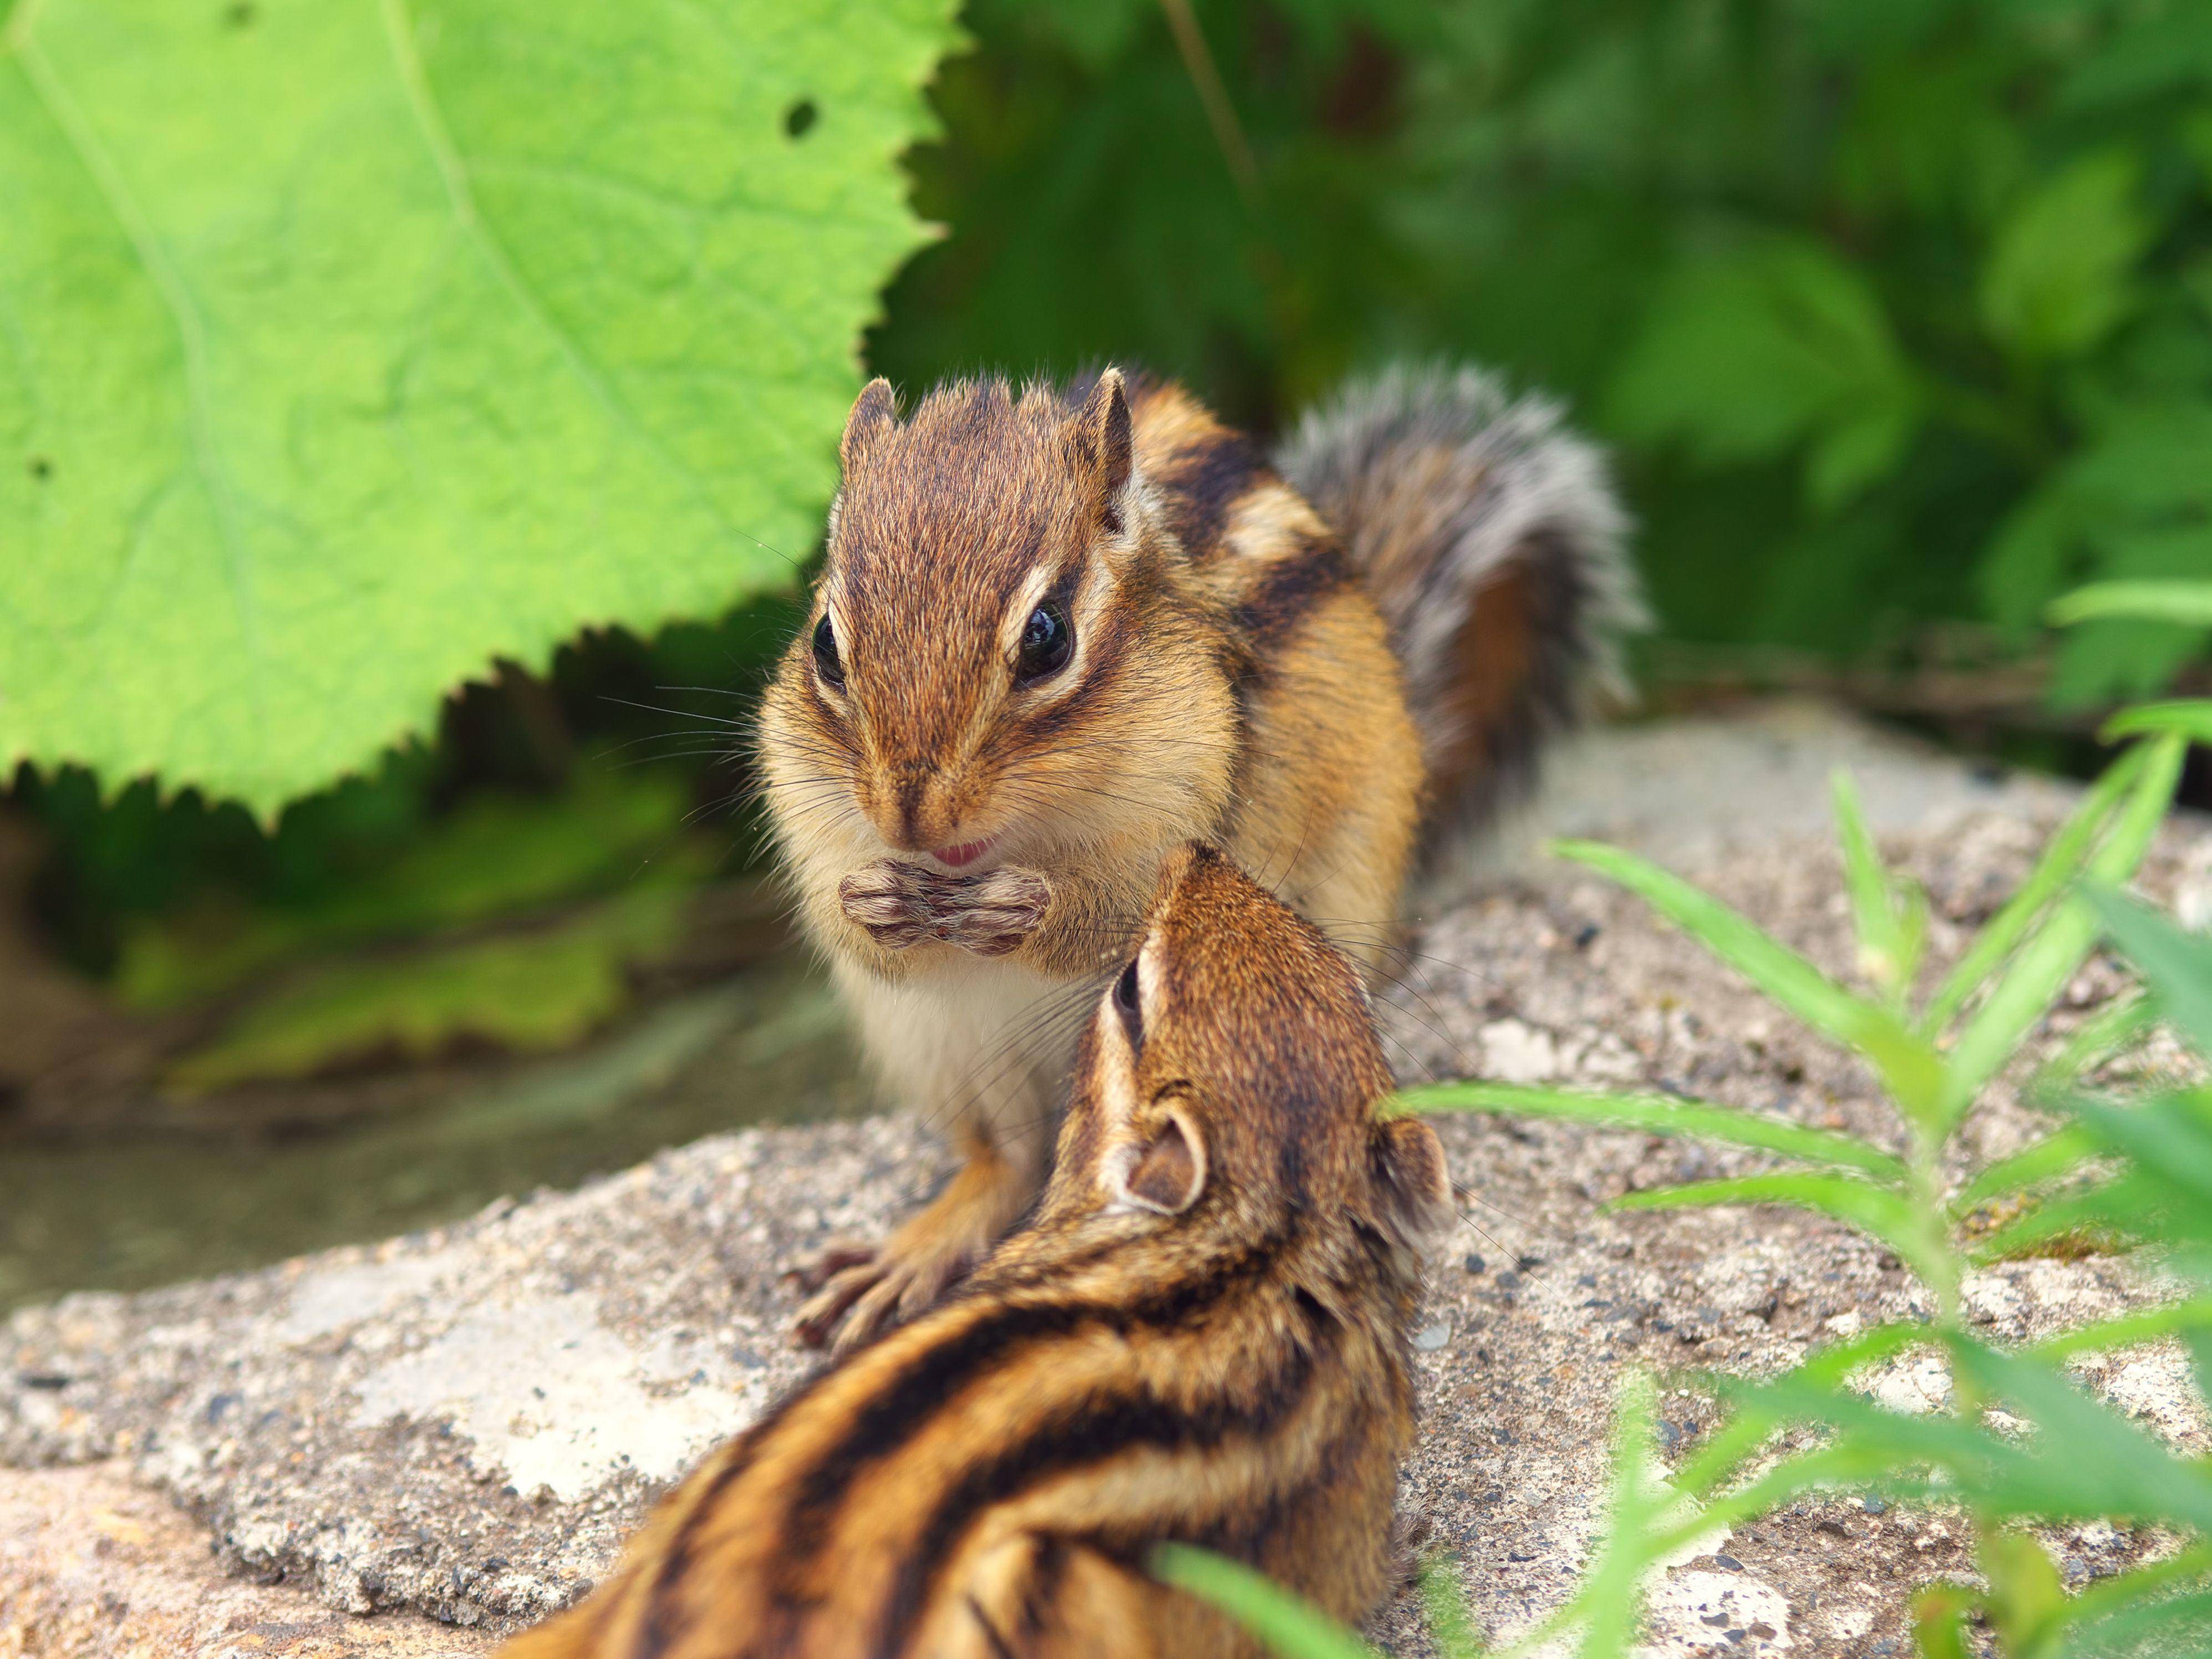 "He, krieg ich auch was ab?" Zwei süße Streifenhörnchen — Bild: Shutterstock / stock_shot